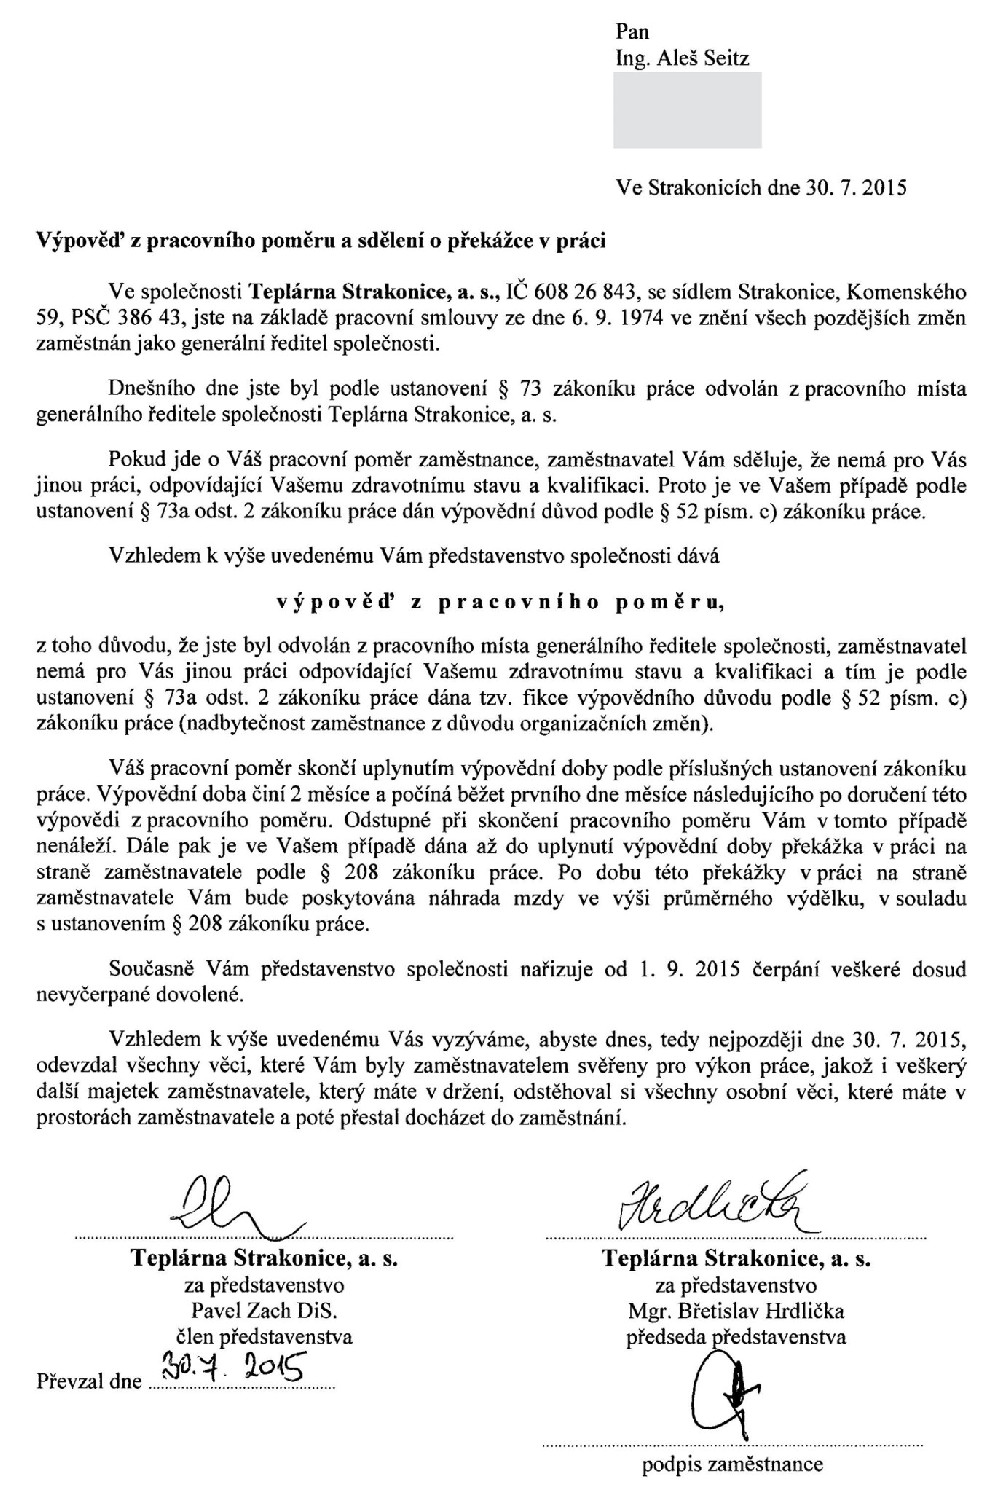 Dopis od Teplárny Strakonice, a.s., předsedy představenstva Břetislava Hrdličky – výpověď Aleši Seitzovi z 30.7.2015